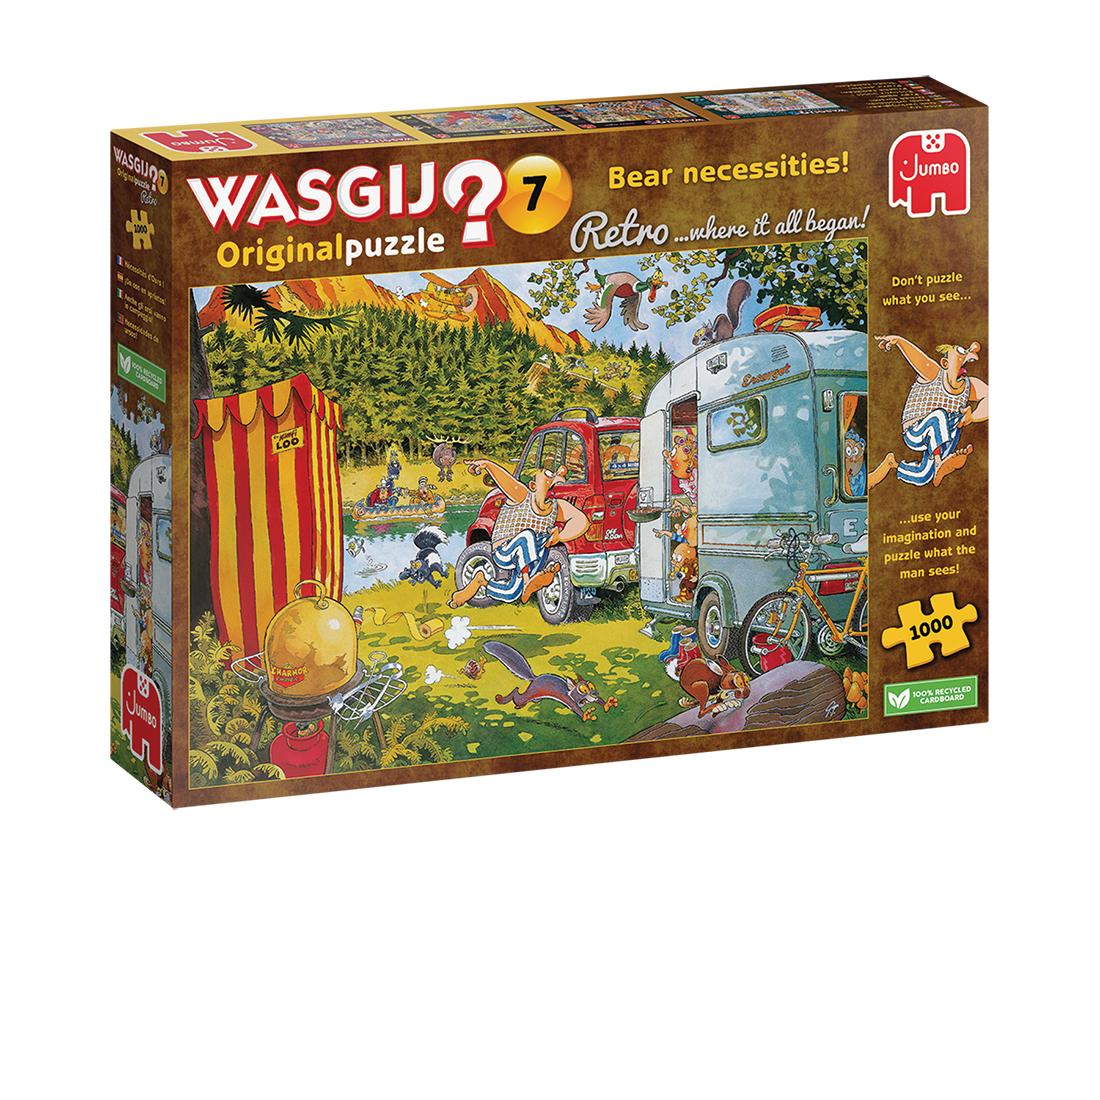 Wasgij Retro Original 7 Bear Necessities! 1000pcs - product image - Jumboplay.com